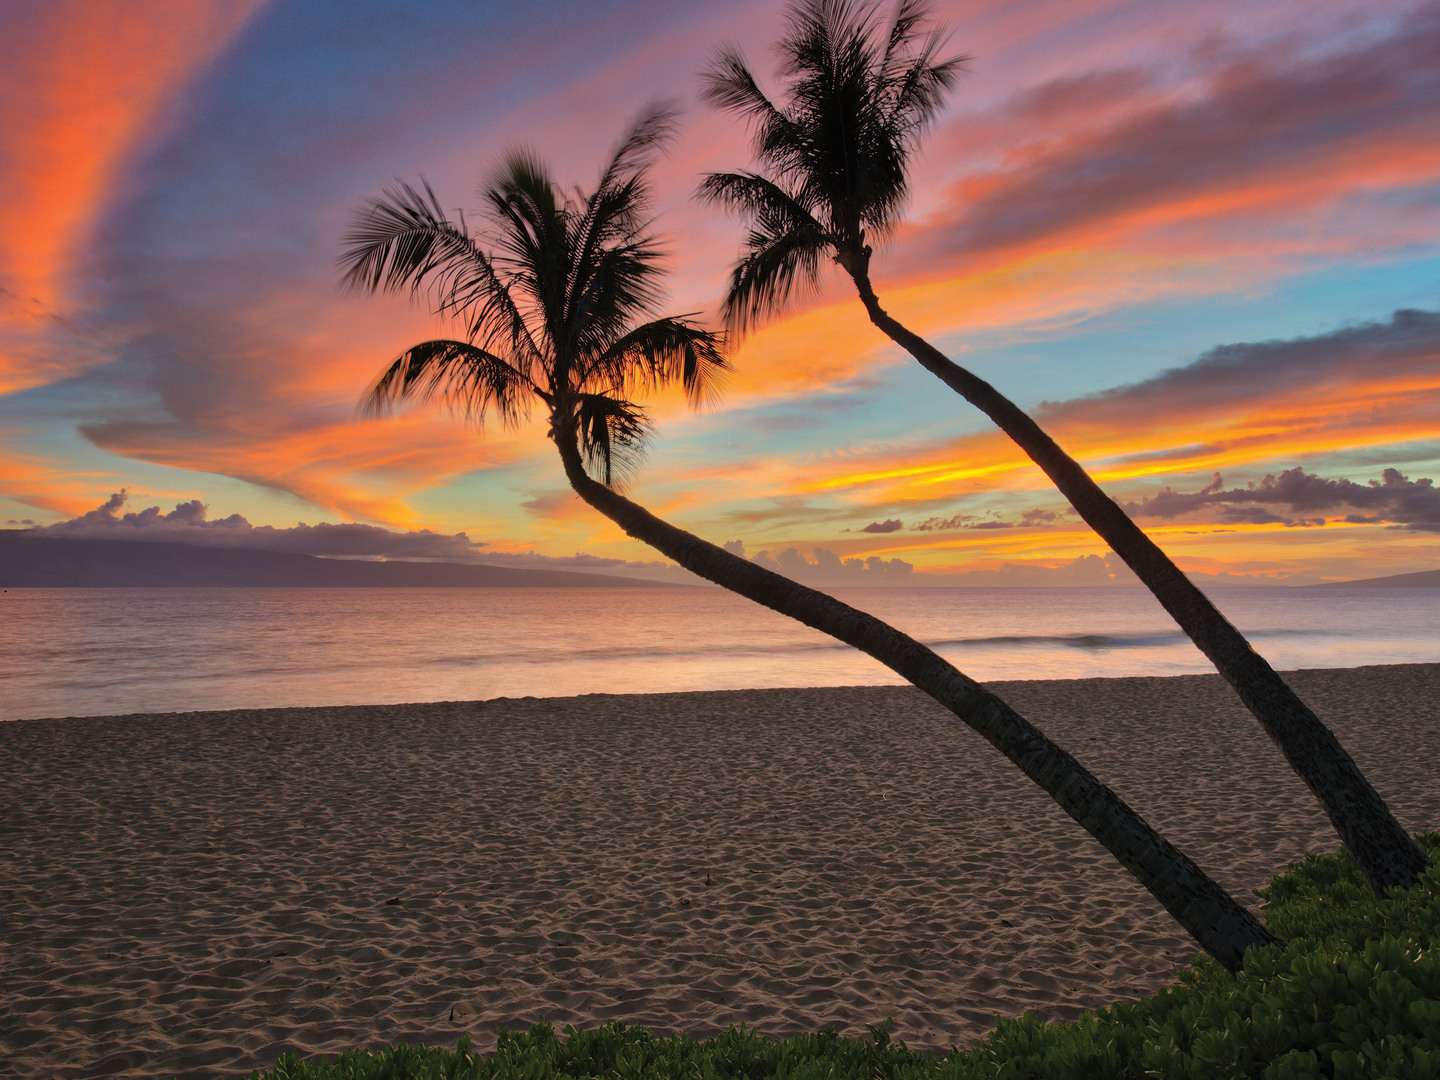 Marriott's Maui Ocean Club - Molokai, Maui, and Lanai Towers Beach. Marriott's Maui Ocean Club - Molokai, Maui, and Lanai Towers is located in Lāhainā, Maui, Hawai‘i United States.